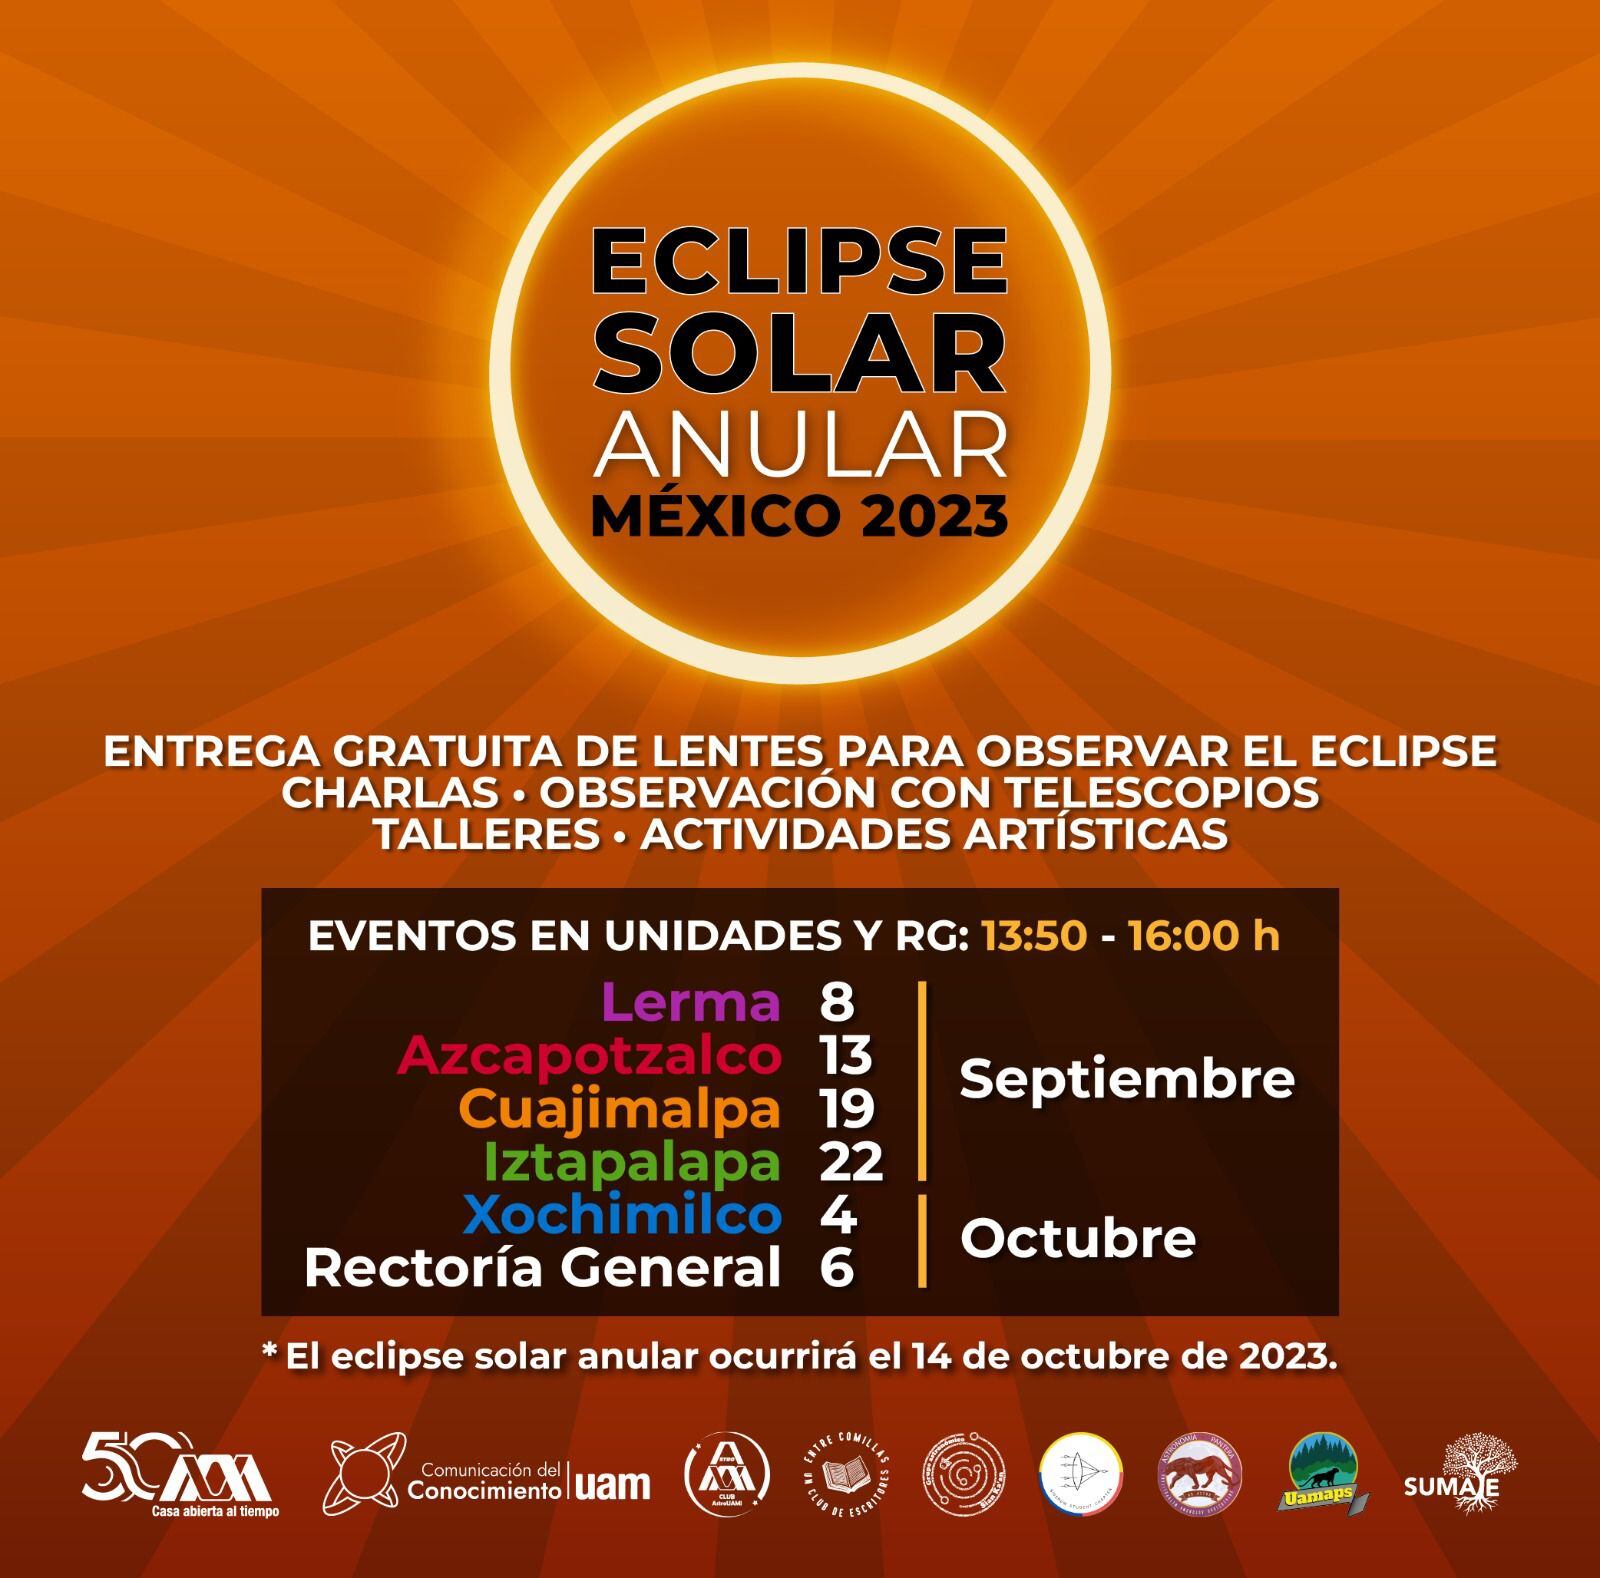 La  Universidad Autónoma Metropolitana (UAM) regalará lentes especiales para ver el eclipse solar anular en México este 14 de octubre de 2023.